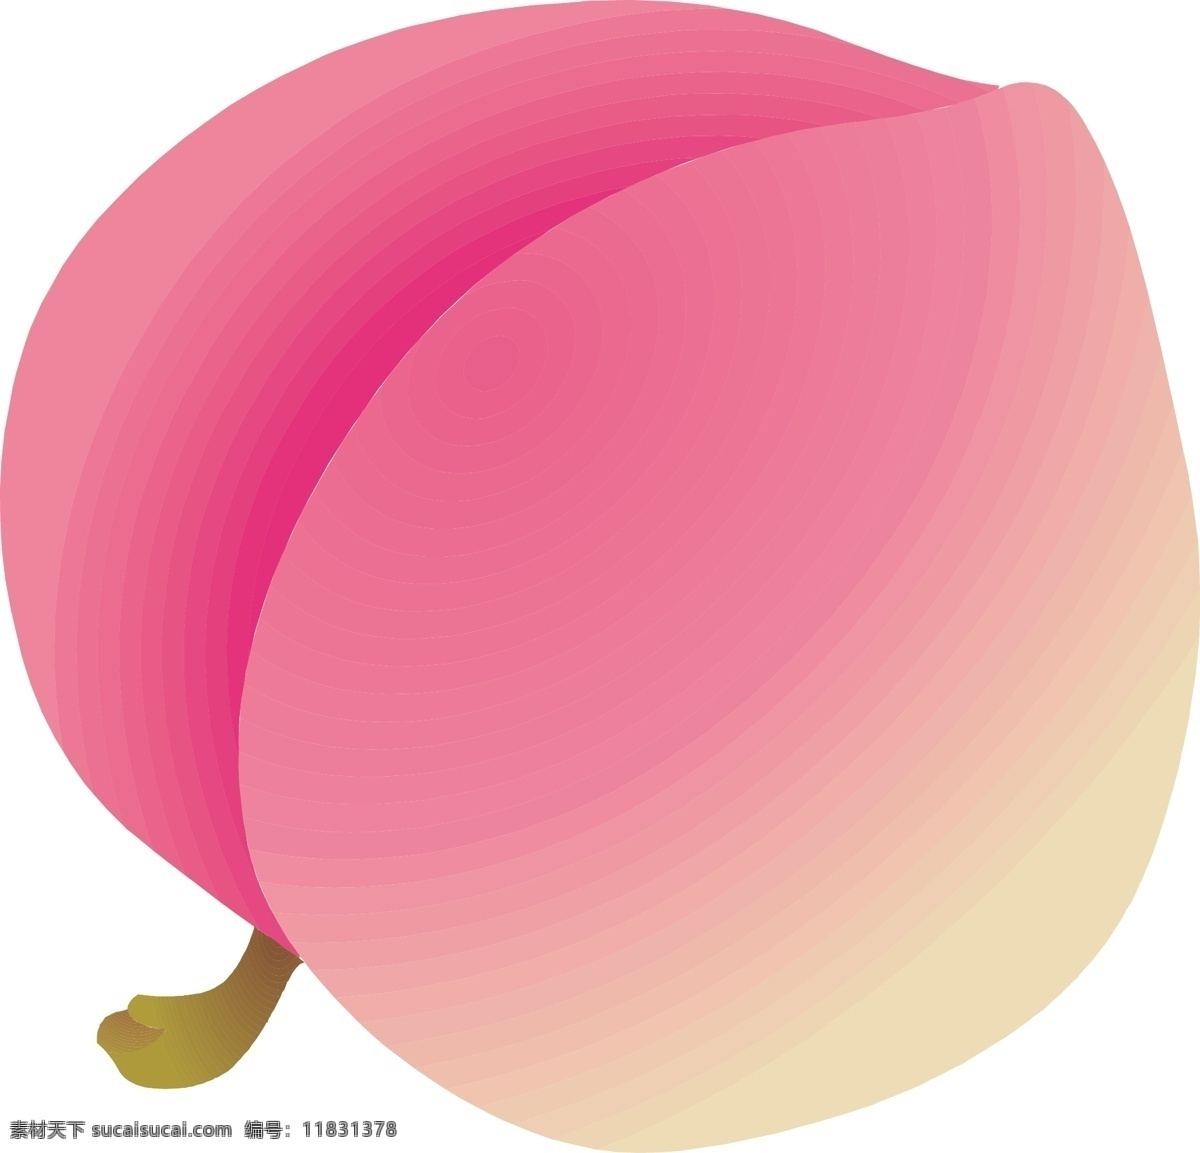 卡通 桃子 水蜜桃 商业矢量 矢量下载 网页矢量 矢量动植物 矢量图 其他矢量图